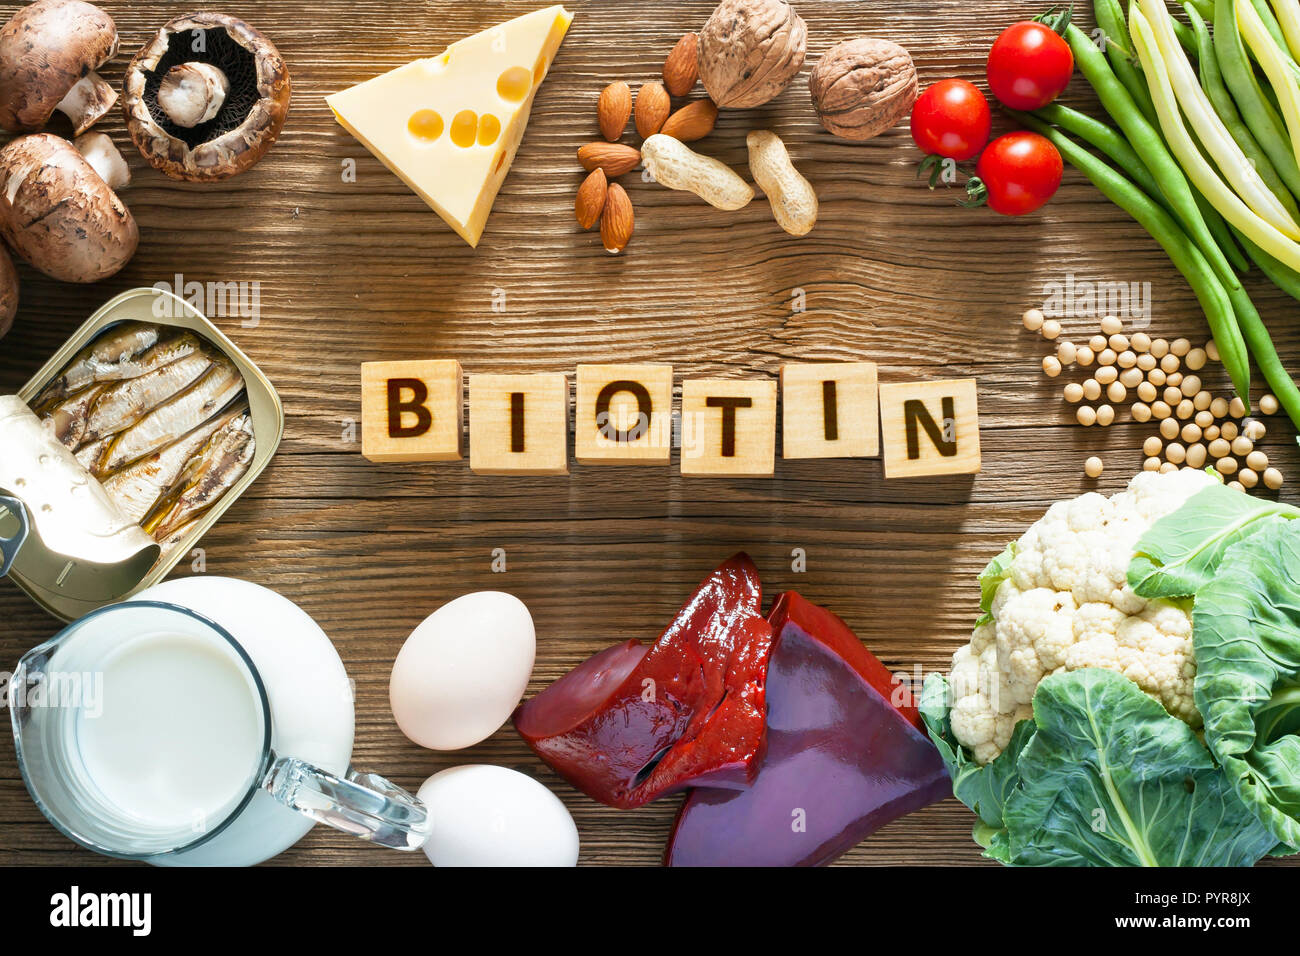 Lebensmittel, die reich an Biotin. Lebensmittel wie Leber, Eier, Käse, Sardinen, Soja, Milch, Blumenkohl, grüne Bohnen, Pilze, Erdnüsse, Walnüsse und Mandeln auf Woo Stockfoto